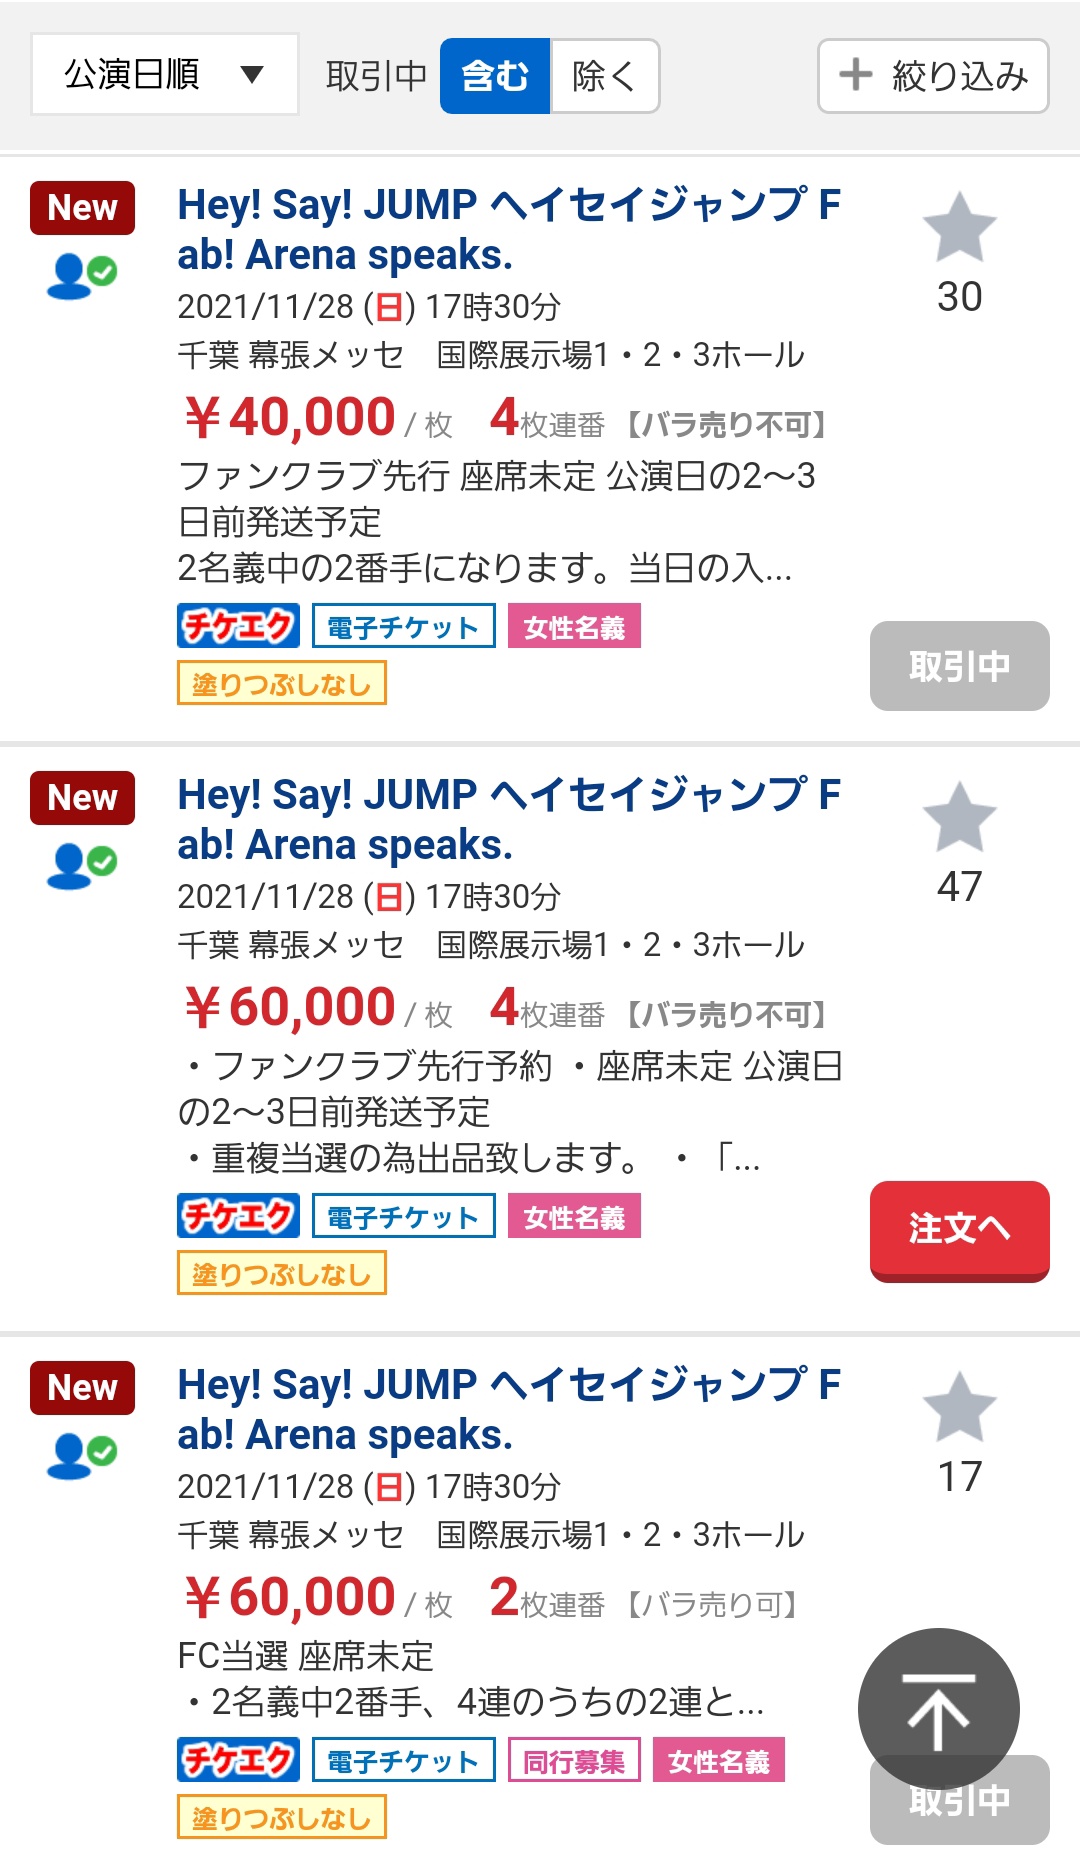 Hey! Say! JUMP 1/1 2連番